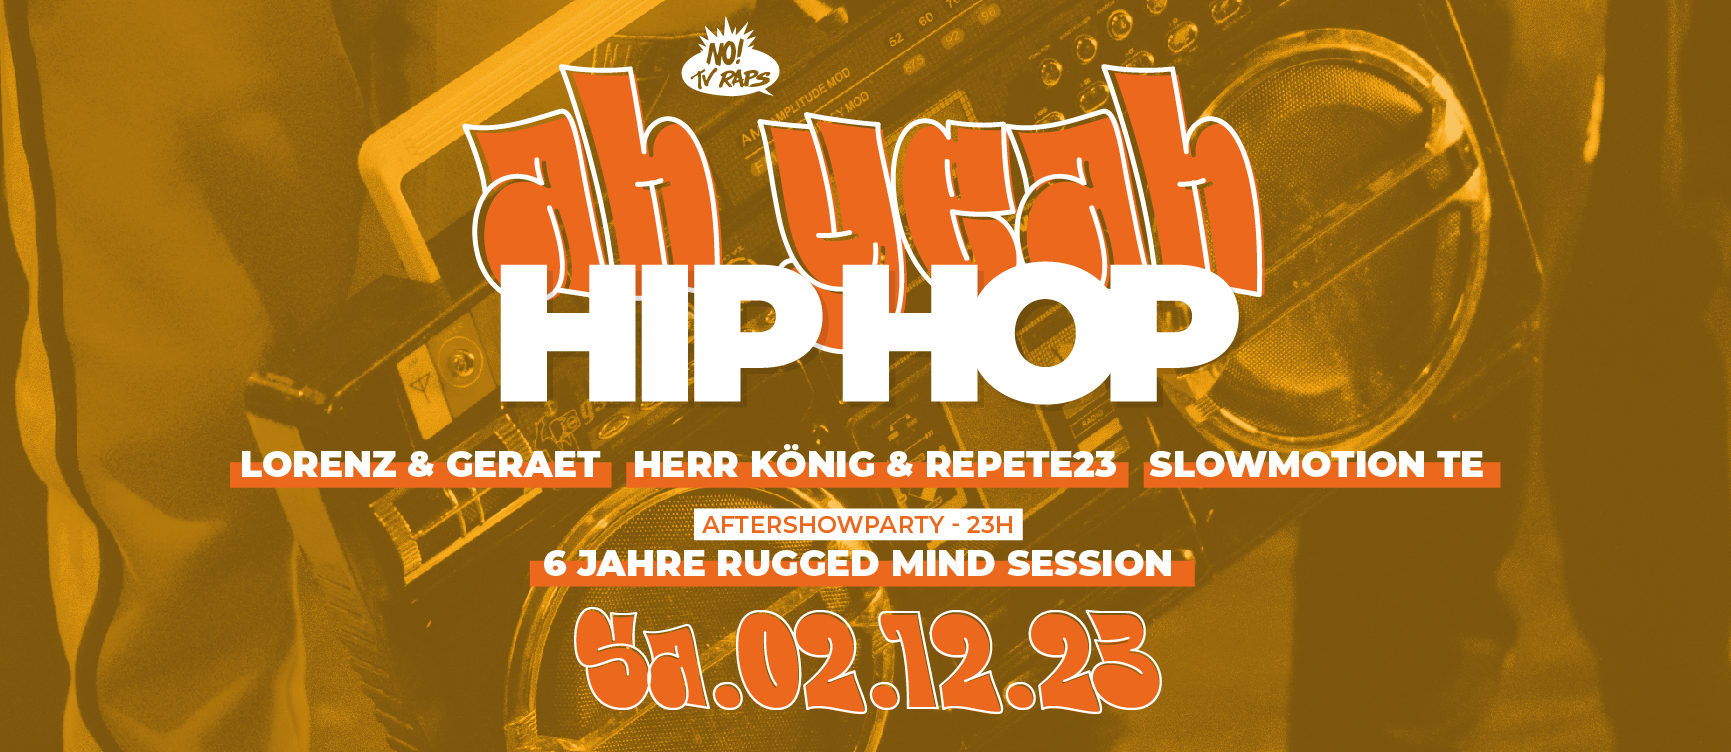 231113 STELLEWRK AH YEAH HIPHOP03 on FB Titel Ah Yeah Hip Hop feat.: Lorenz & Geraet   BeoBlues/ Herr König&Repete23/ Slowmo/ Rugged Mind Birthday